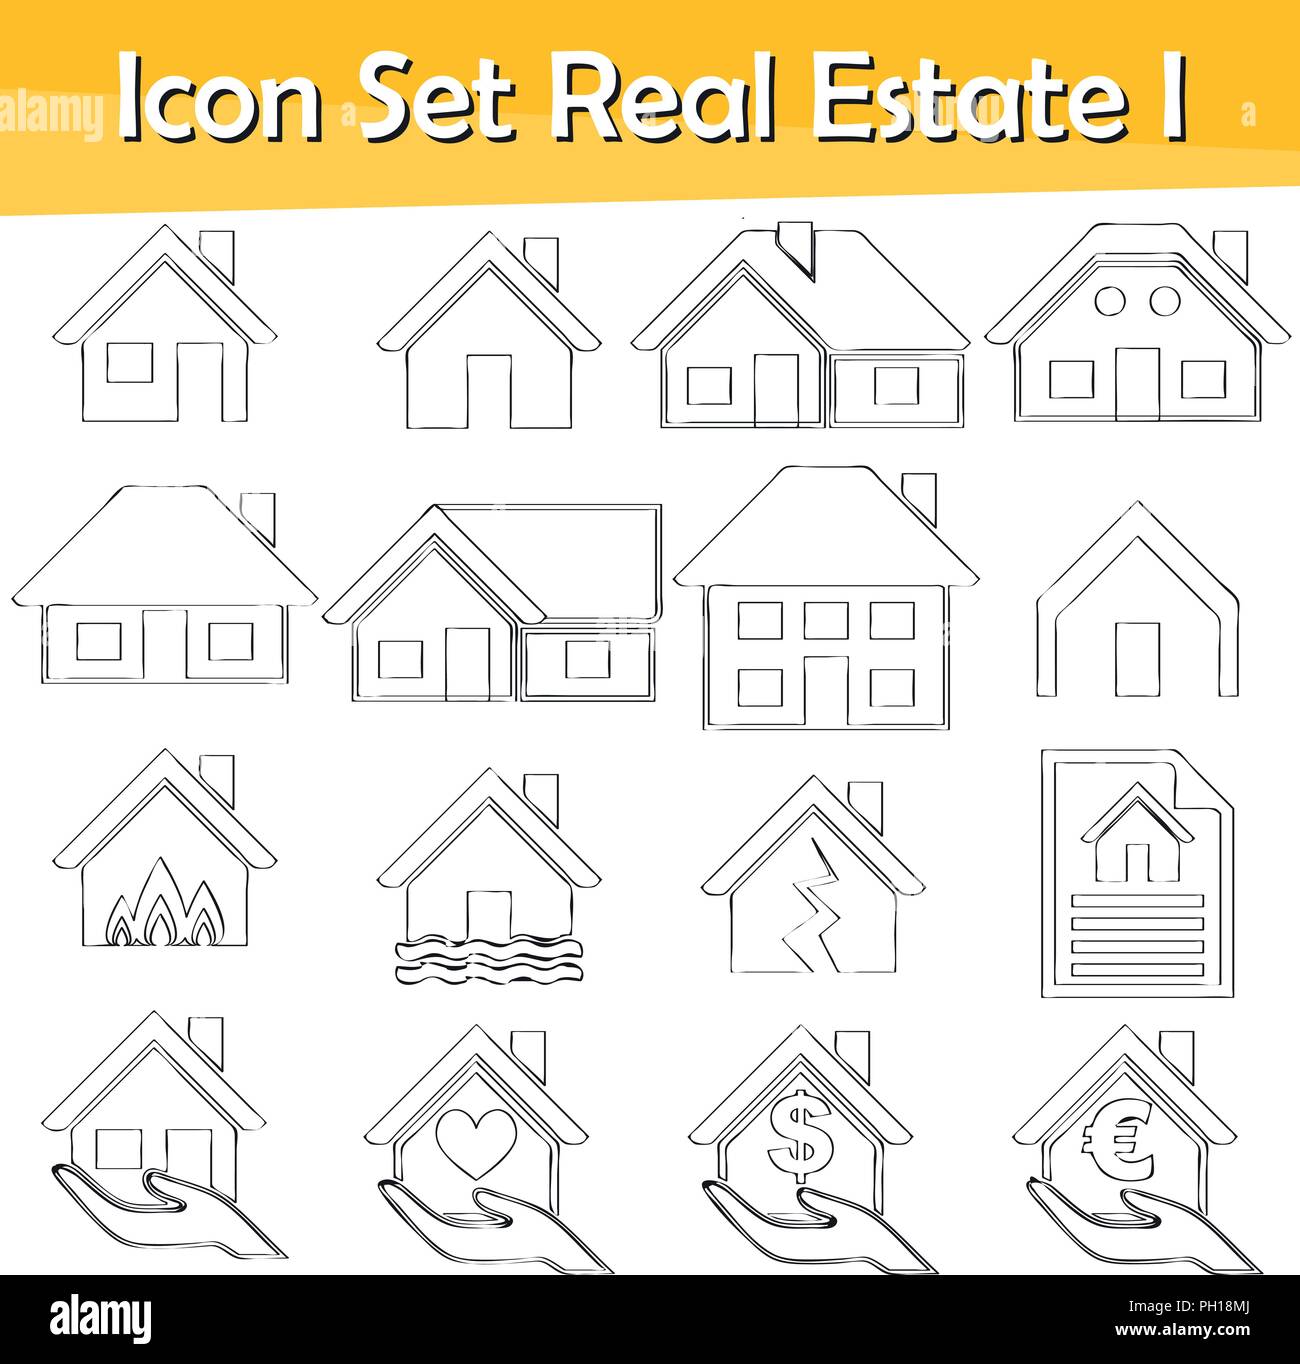 Gezeichnet Doodle gesäumt Icon Set Immobilien ich mit 16 Icons für den kreativen Einsatz in Grafik Design Stock Vektor